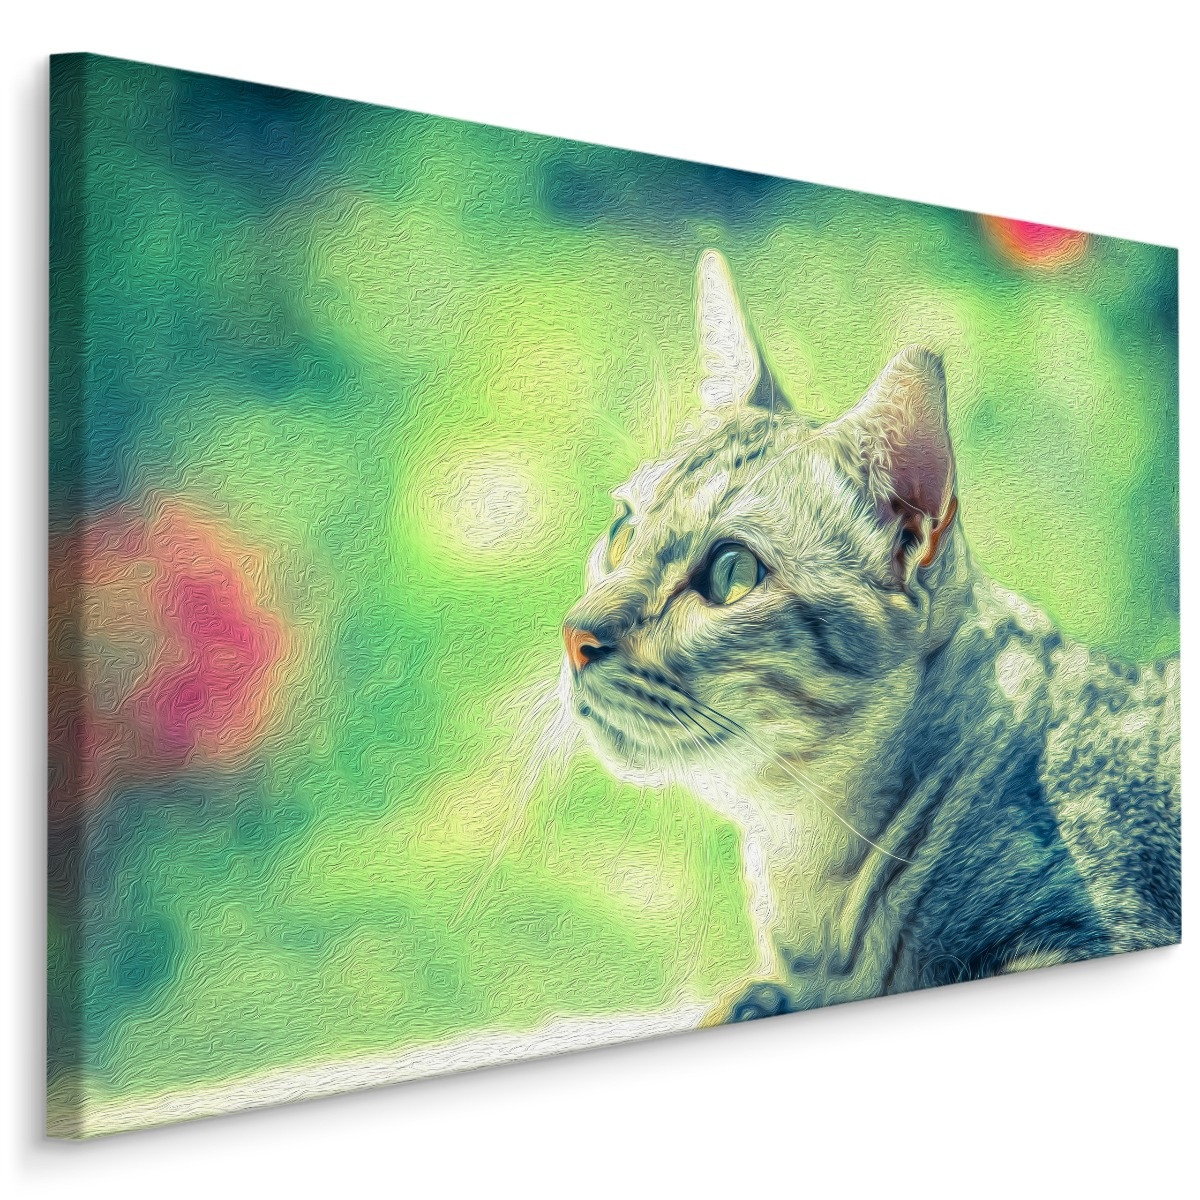 Schilderij - Kat in het Groen, Premium Print op Canvas, 5 maten